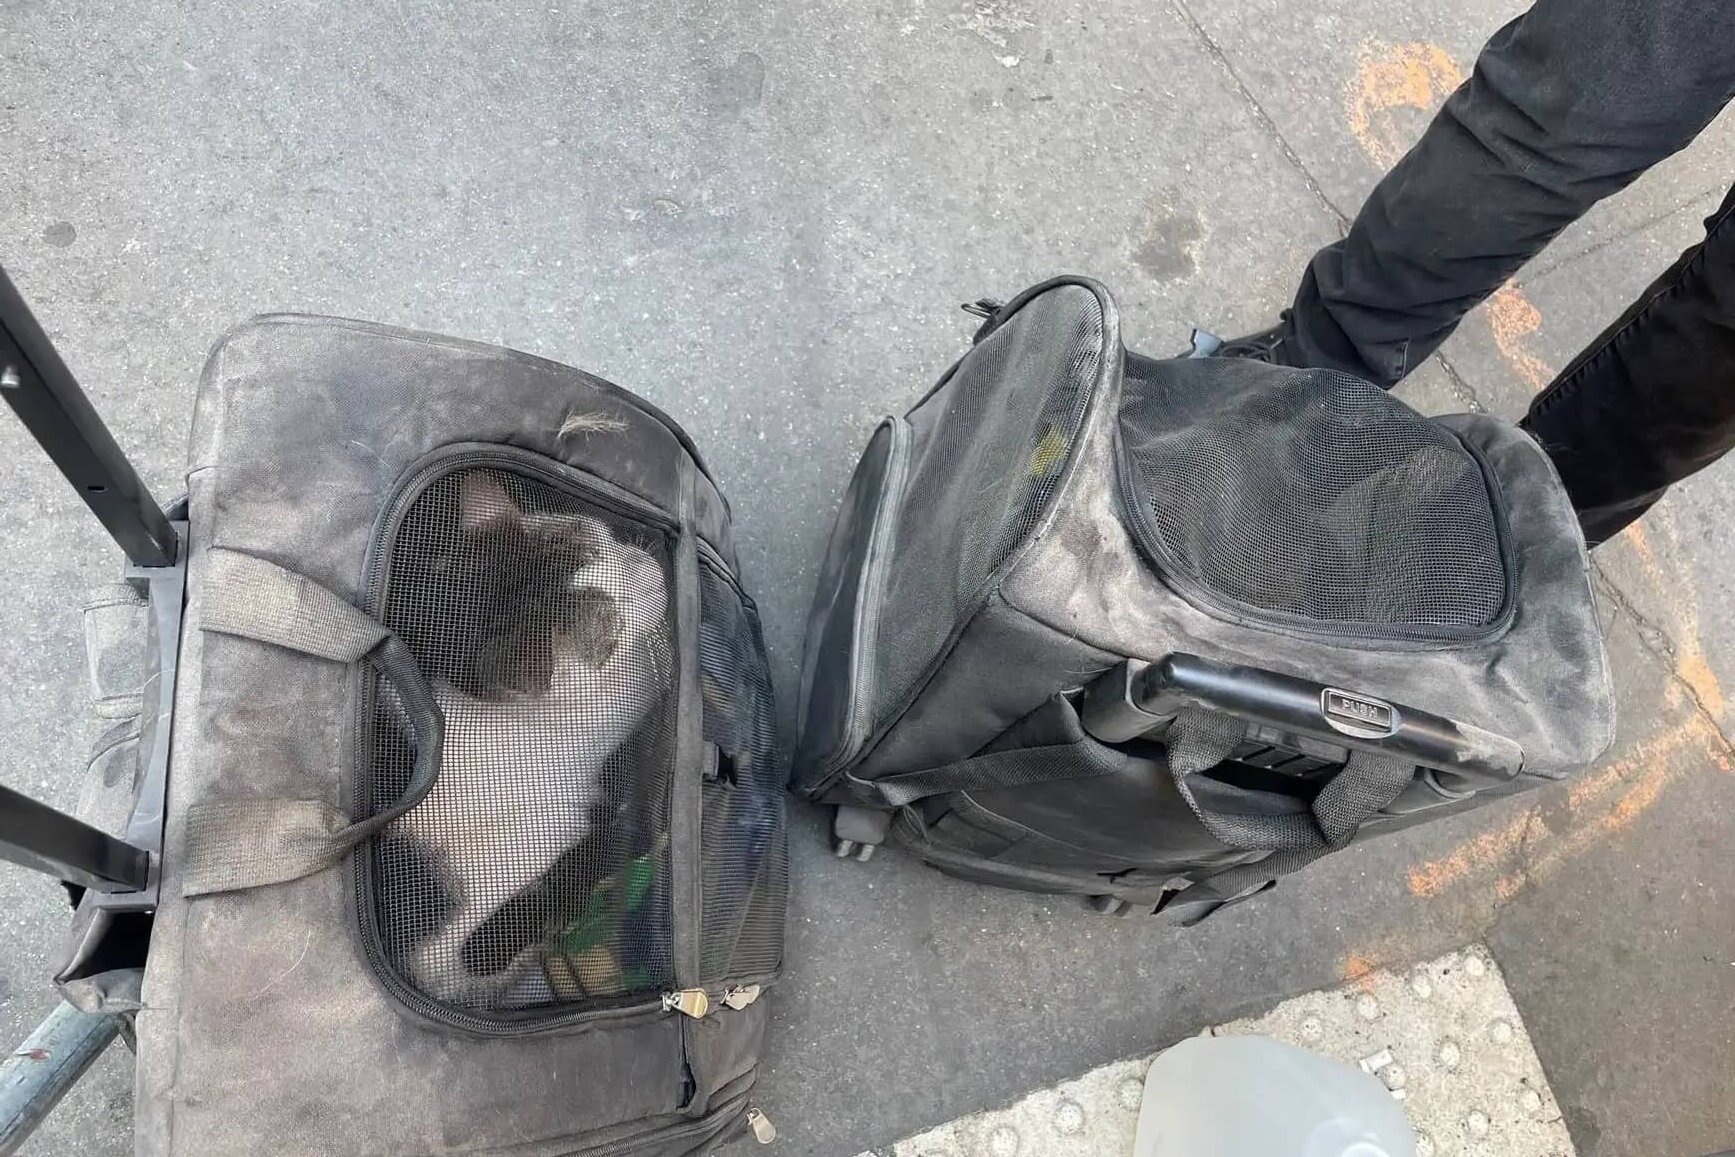 Bejaarde katten herenigd met eigenaar na instorten parkeergarage